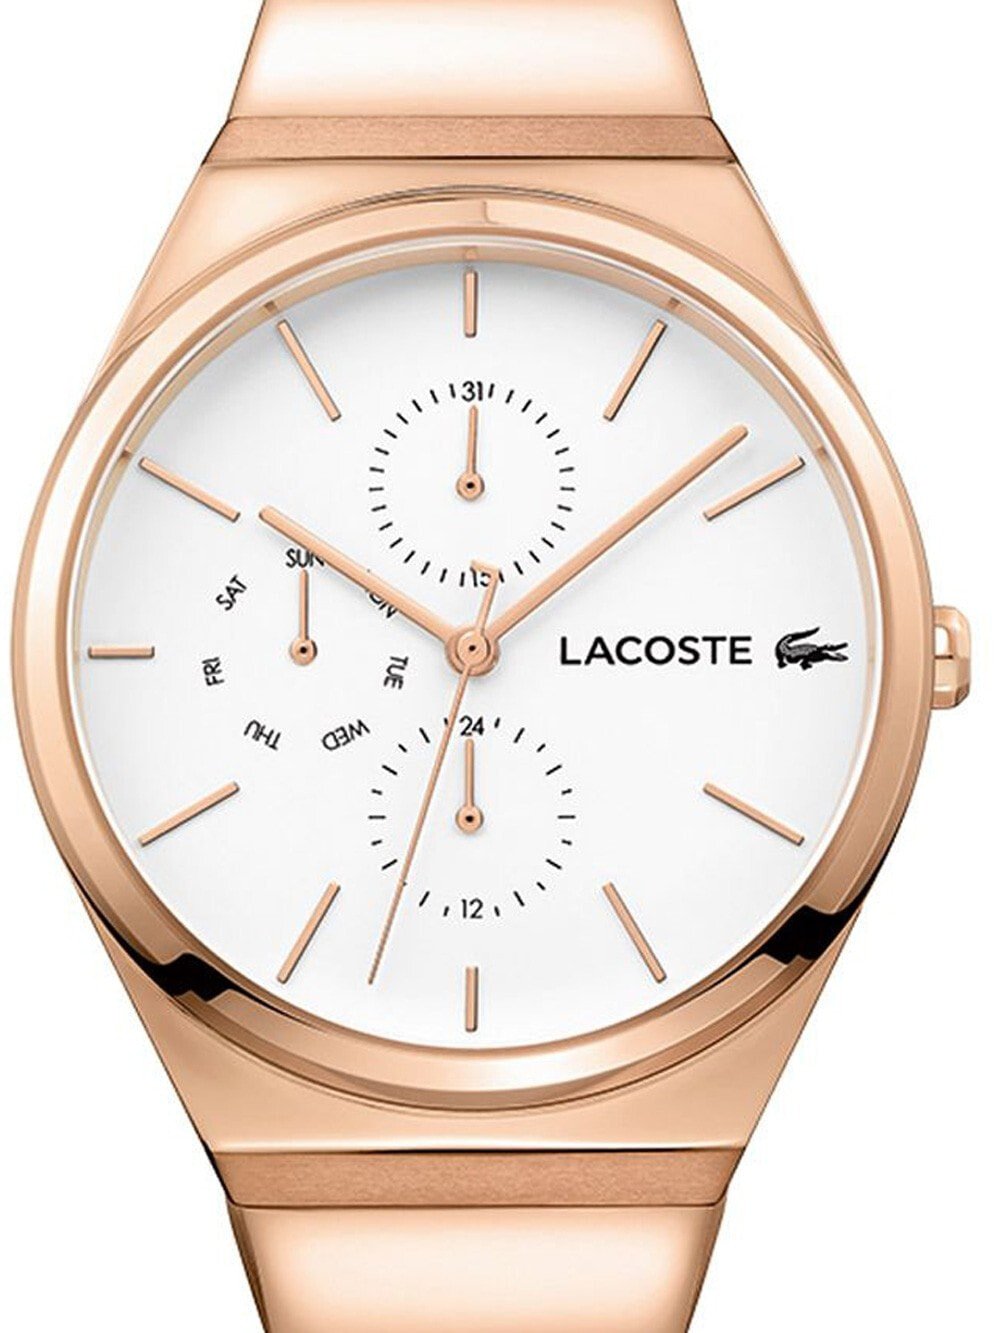 Женские наручные кварцевые часы  Lacoste хронограф,  ремешок из нержавеющей стали. Водонепроницаемость-3 АТМ. Защита от царапин.